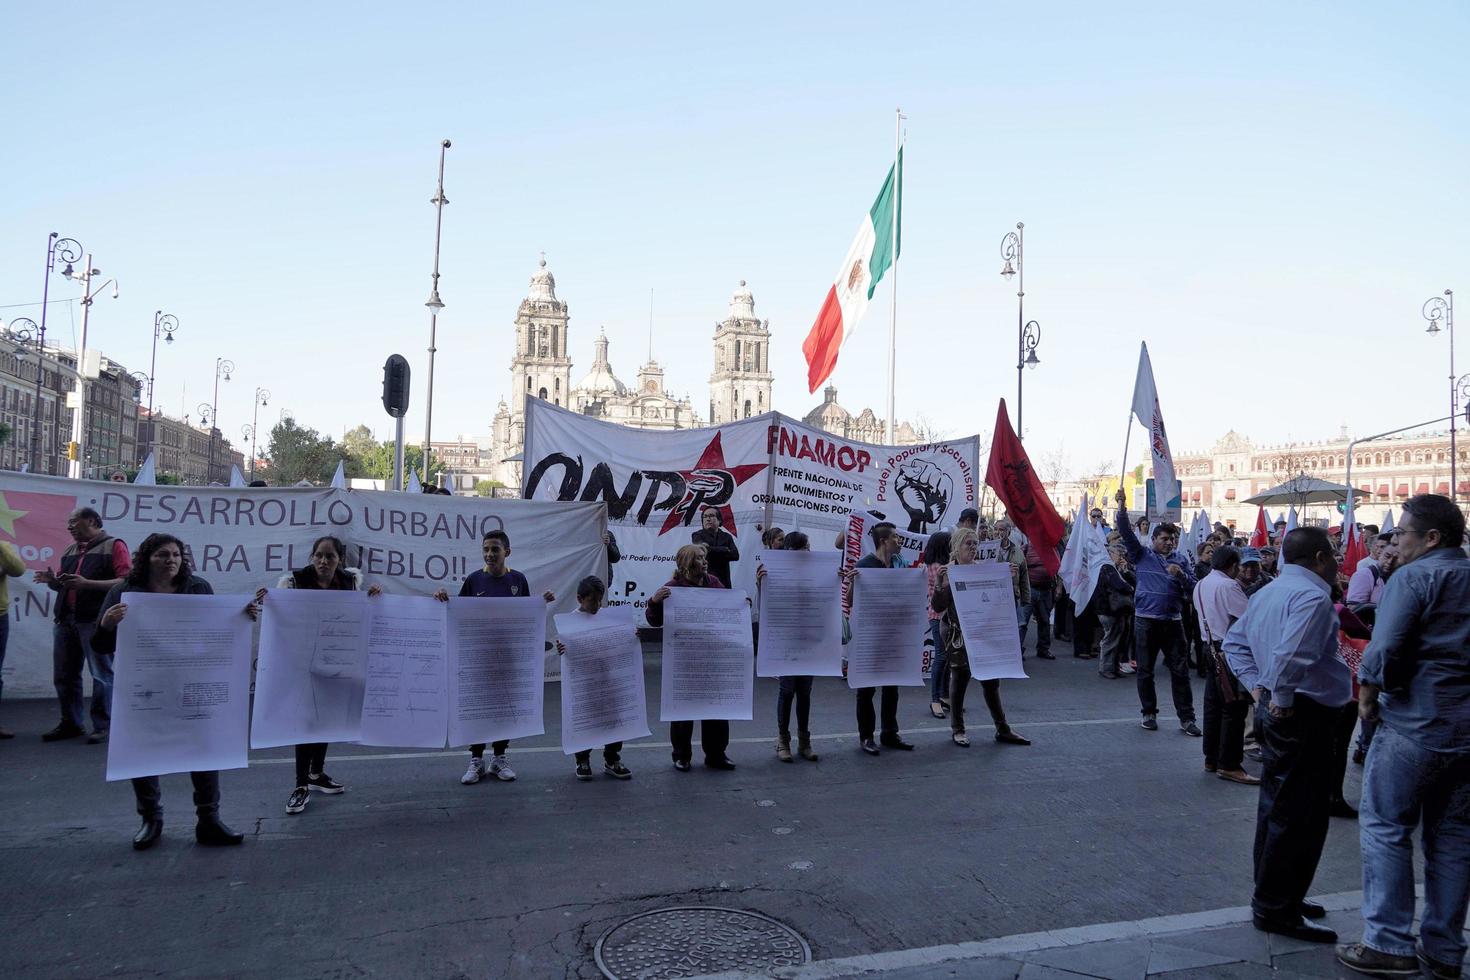 ciudad de méxico - 30 de enero de 2019 - manifestación política popular en la plaza principal de la ciudad foto